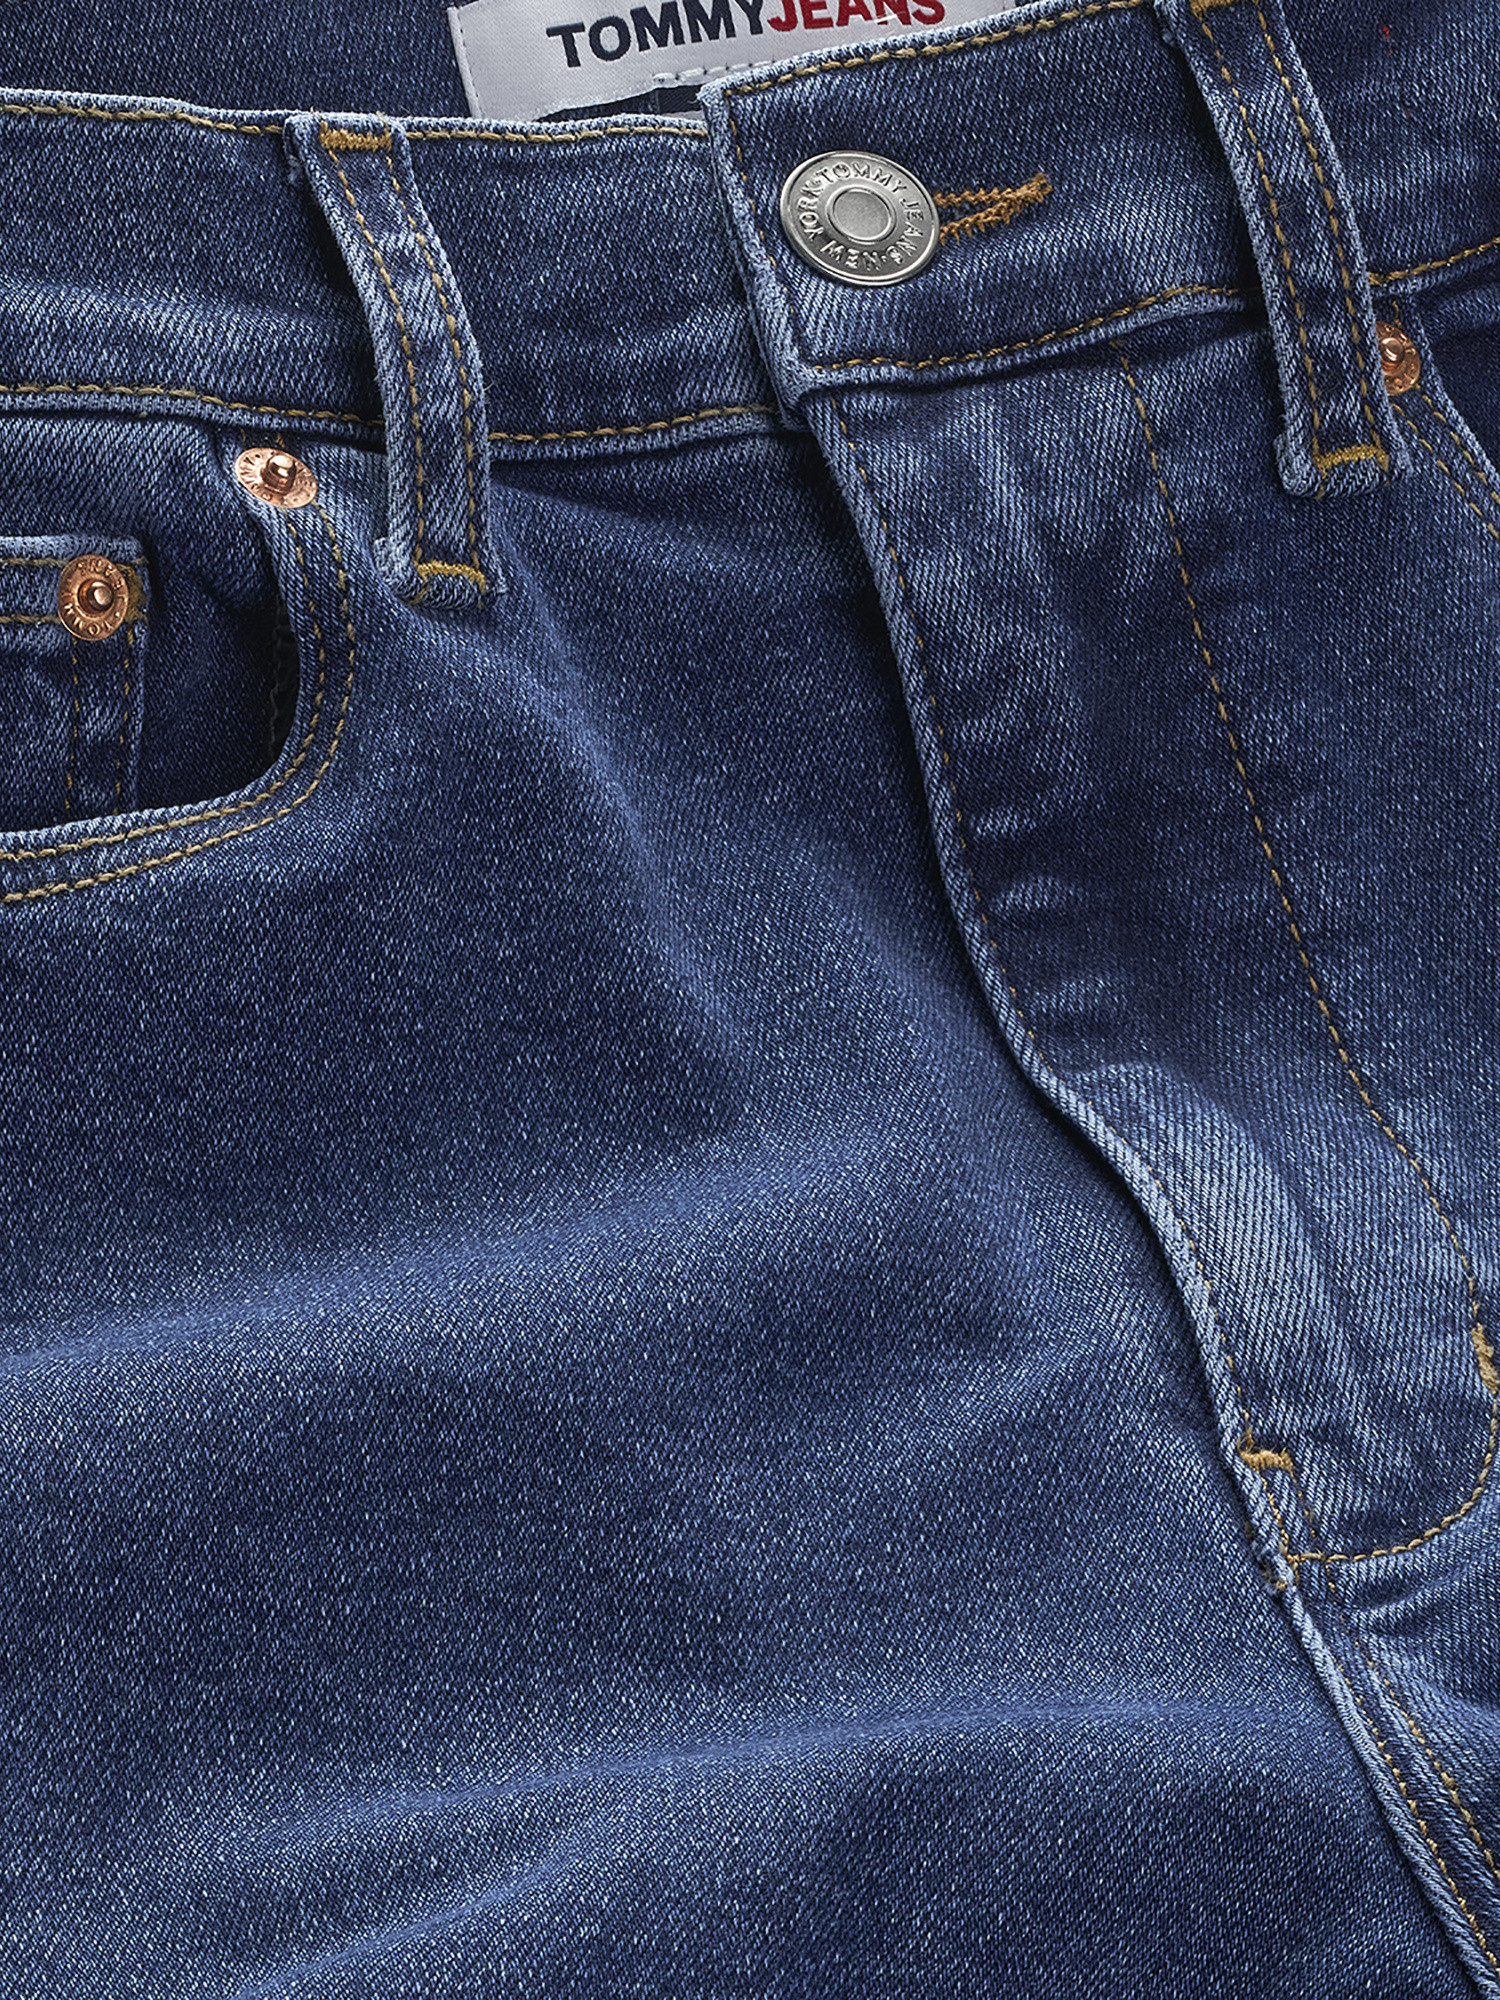 Tommy Jeans - Super skinny jeans, Blue, large image number 2